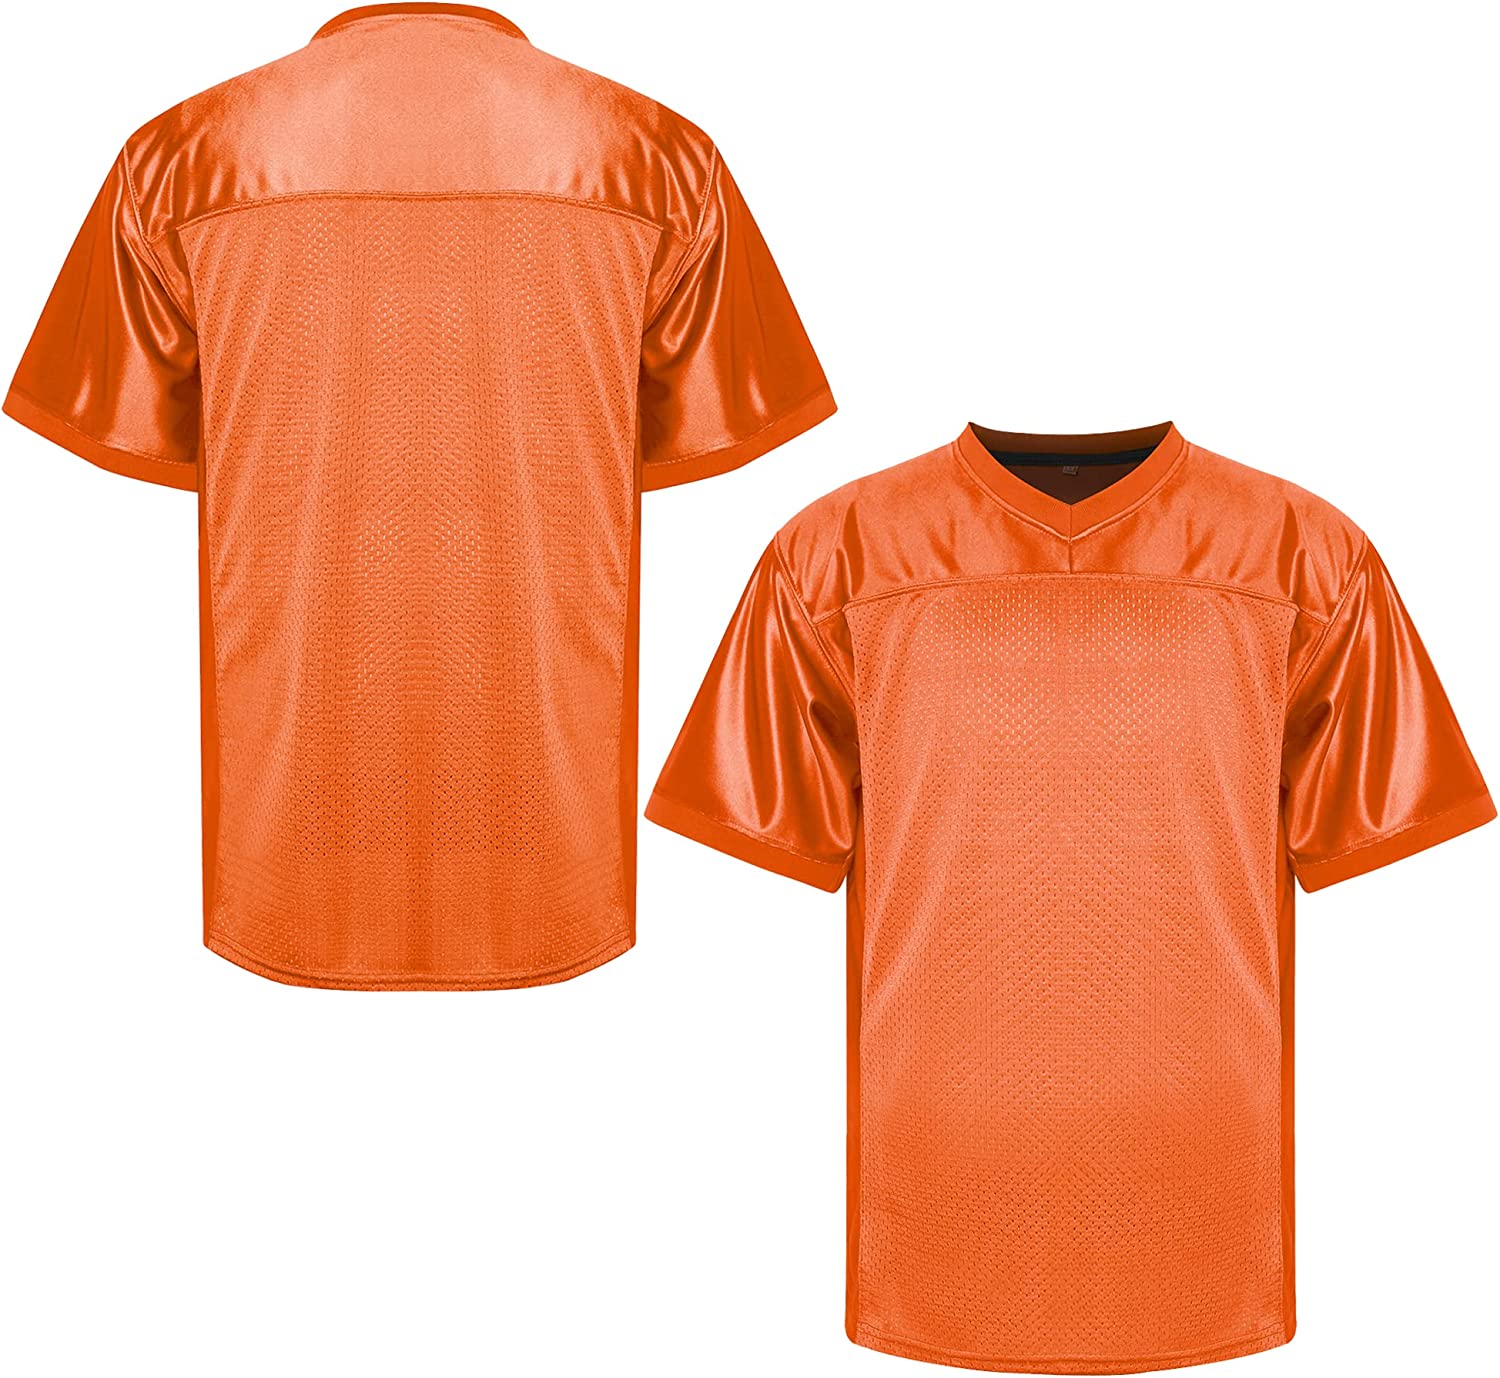 Bulk Orange Blank Football Practice Jerseys 